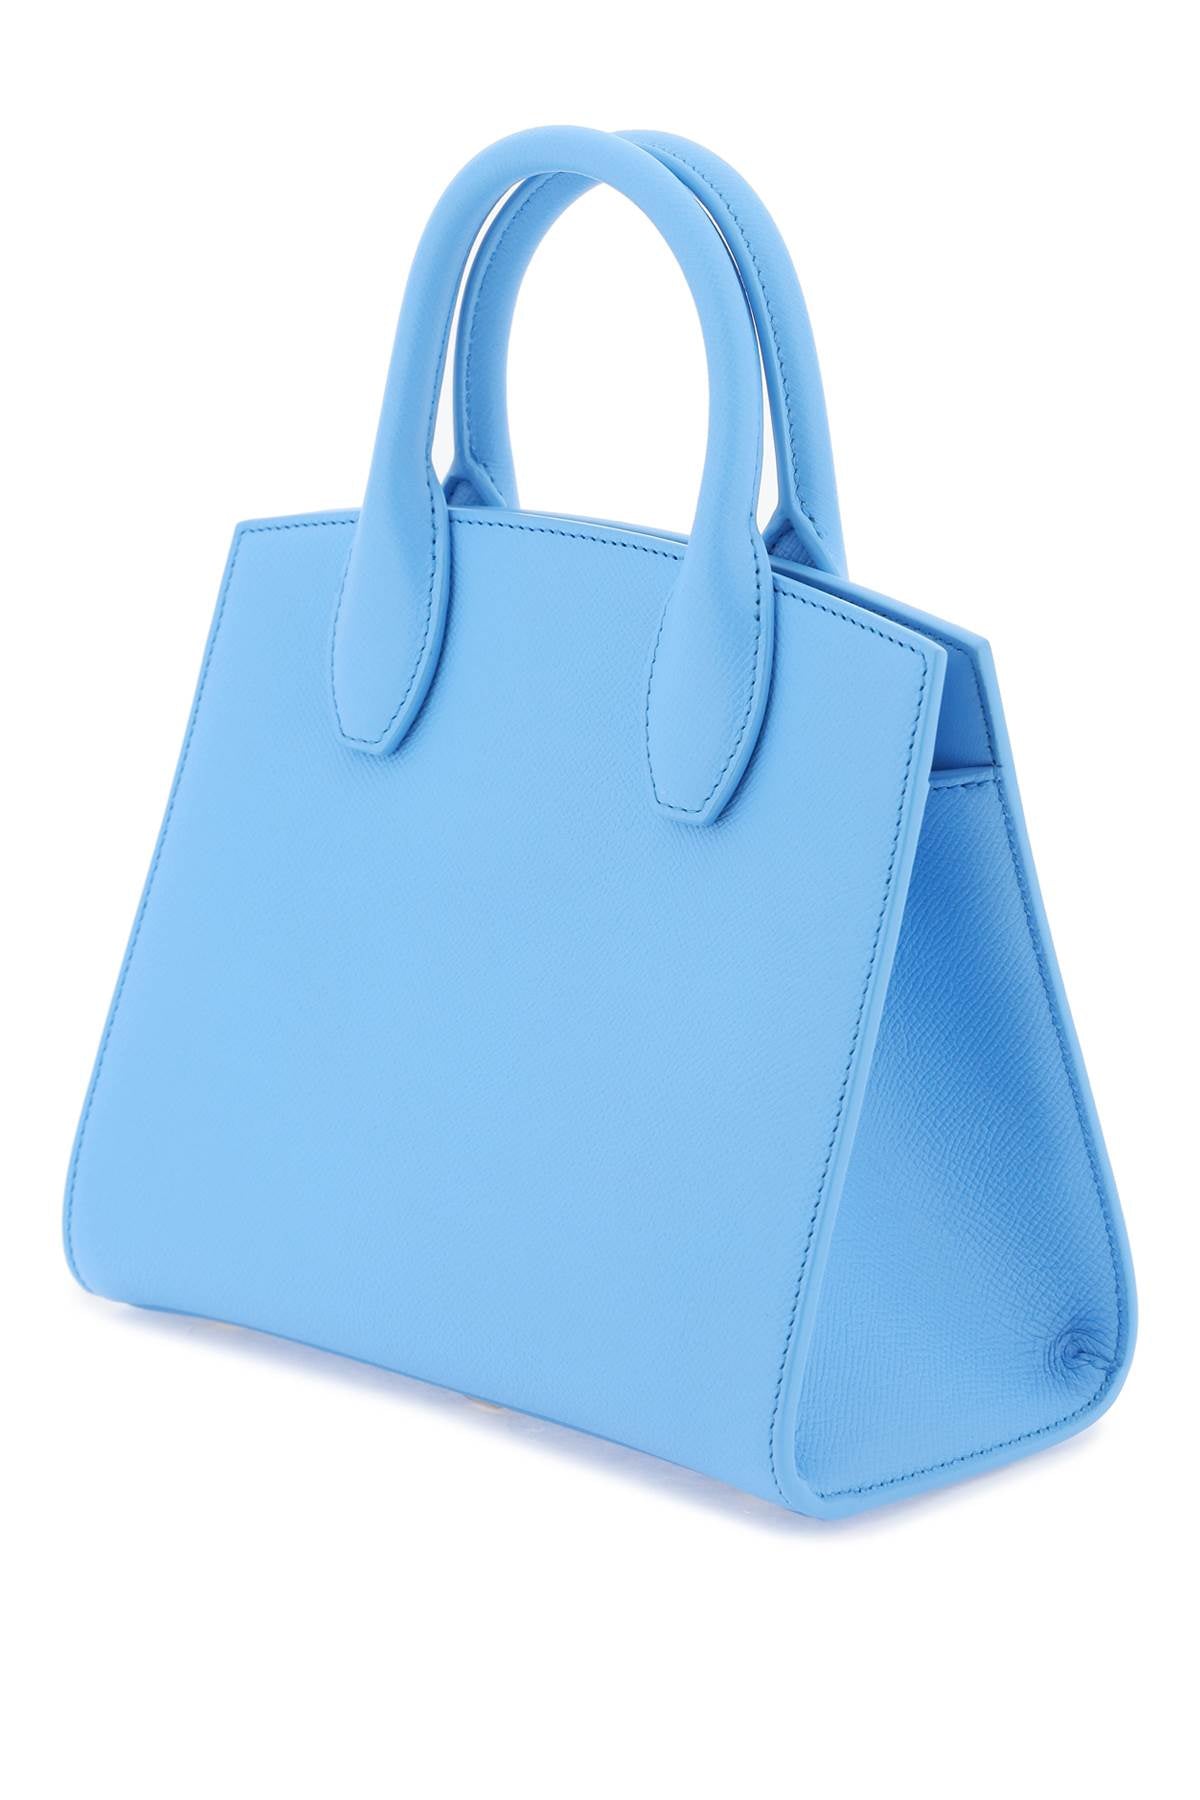 原色：嬌嫩淺藍色 Genuine Leather 迷你手提包，飾有Ferragamo品牌經典的Gancini鉤扣